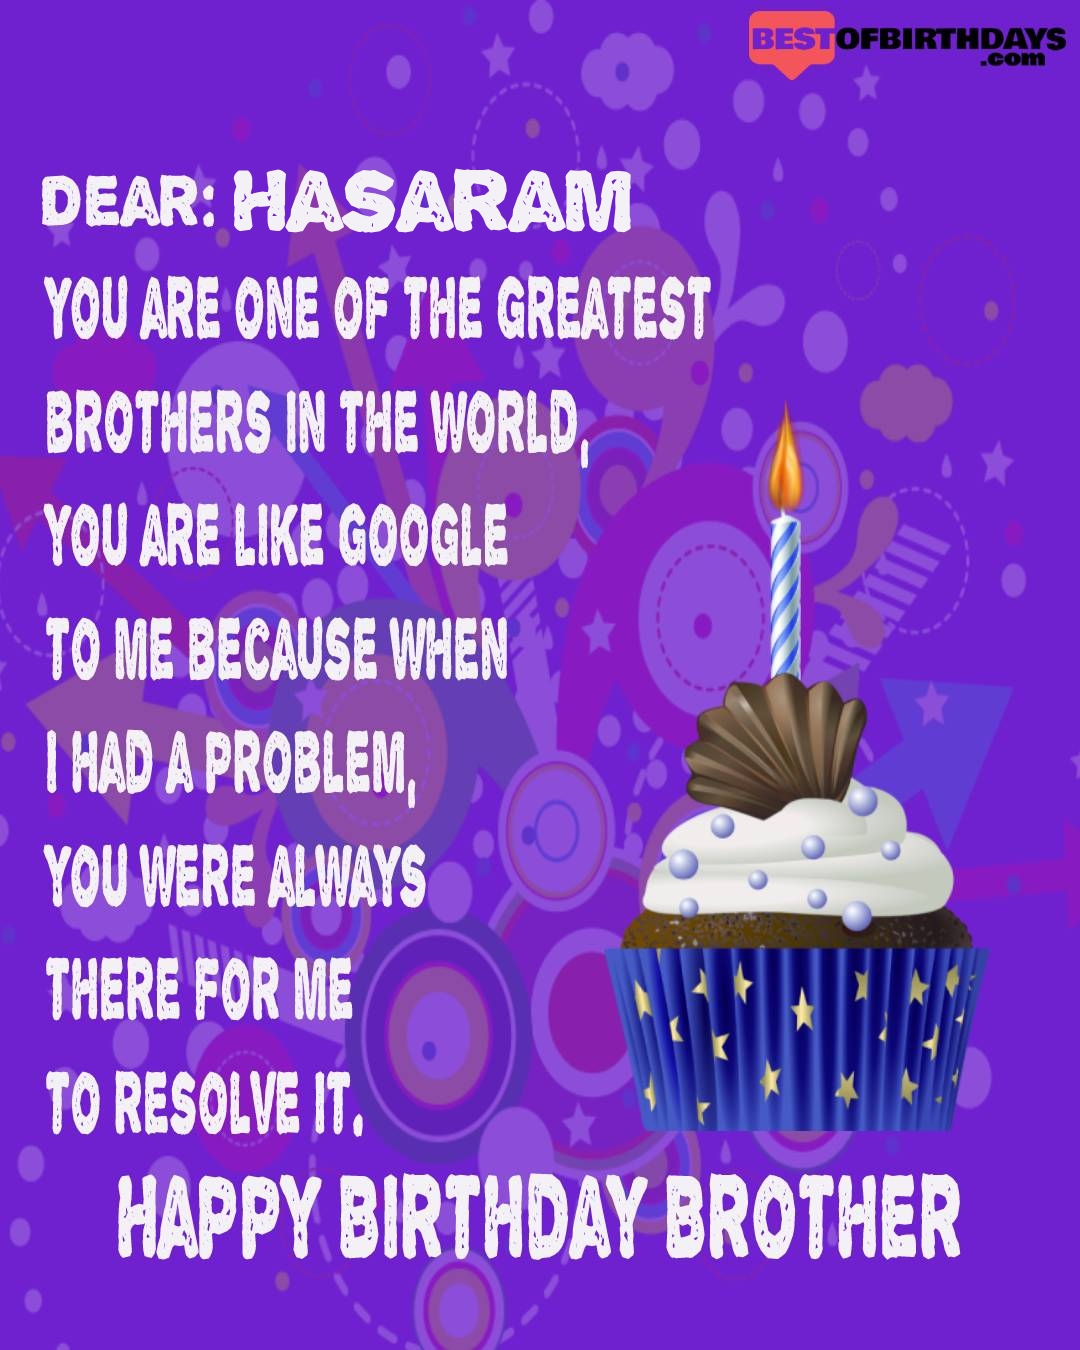 Happy birthday hasaram bhai brother bro